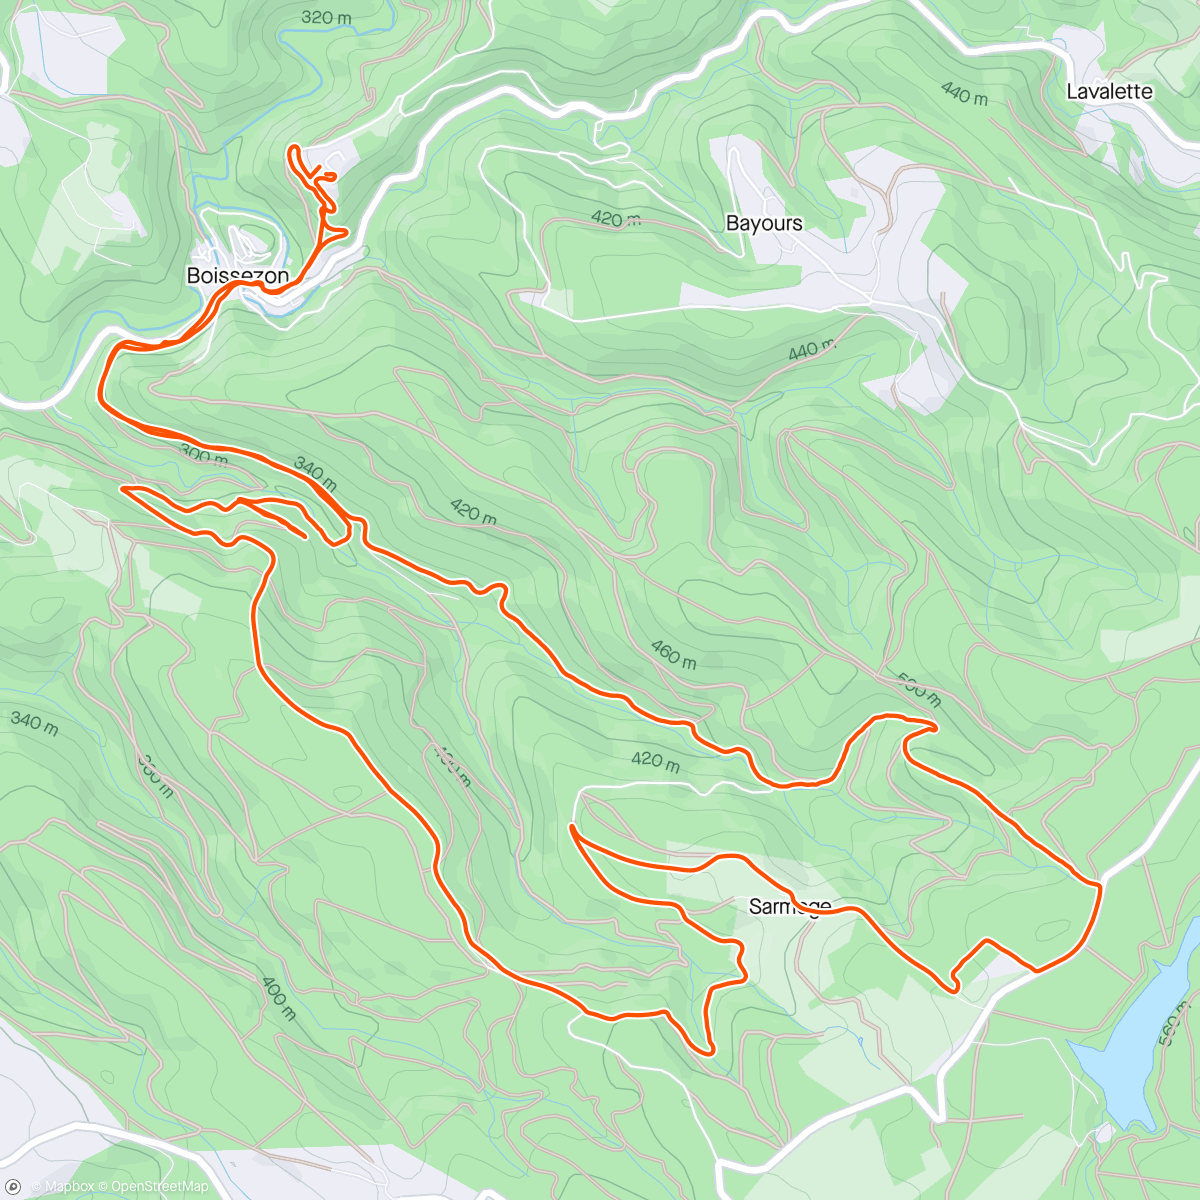 Map of the activity, Les combes boissezonaises